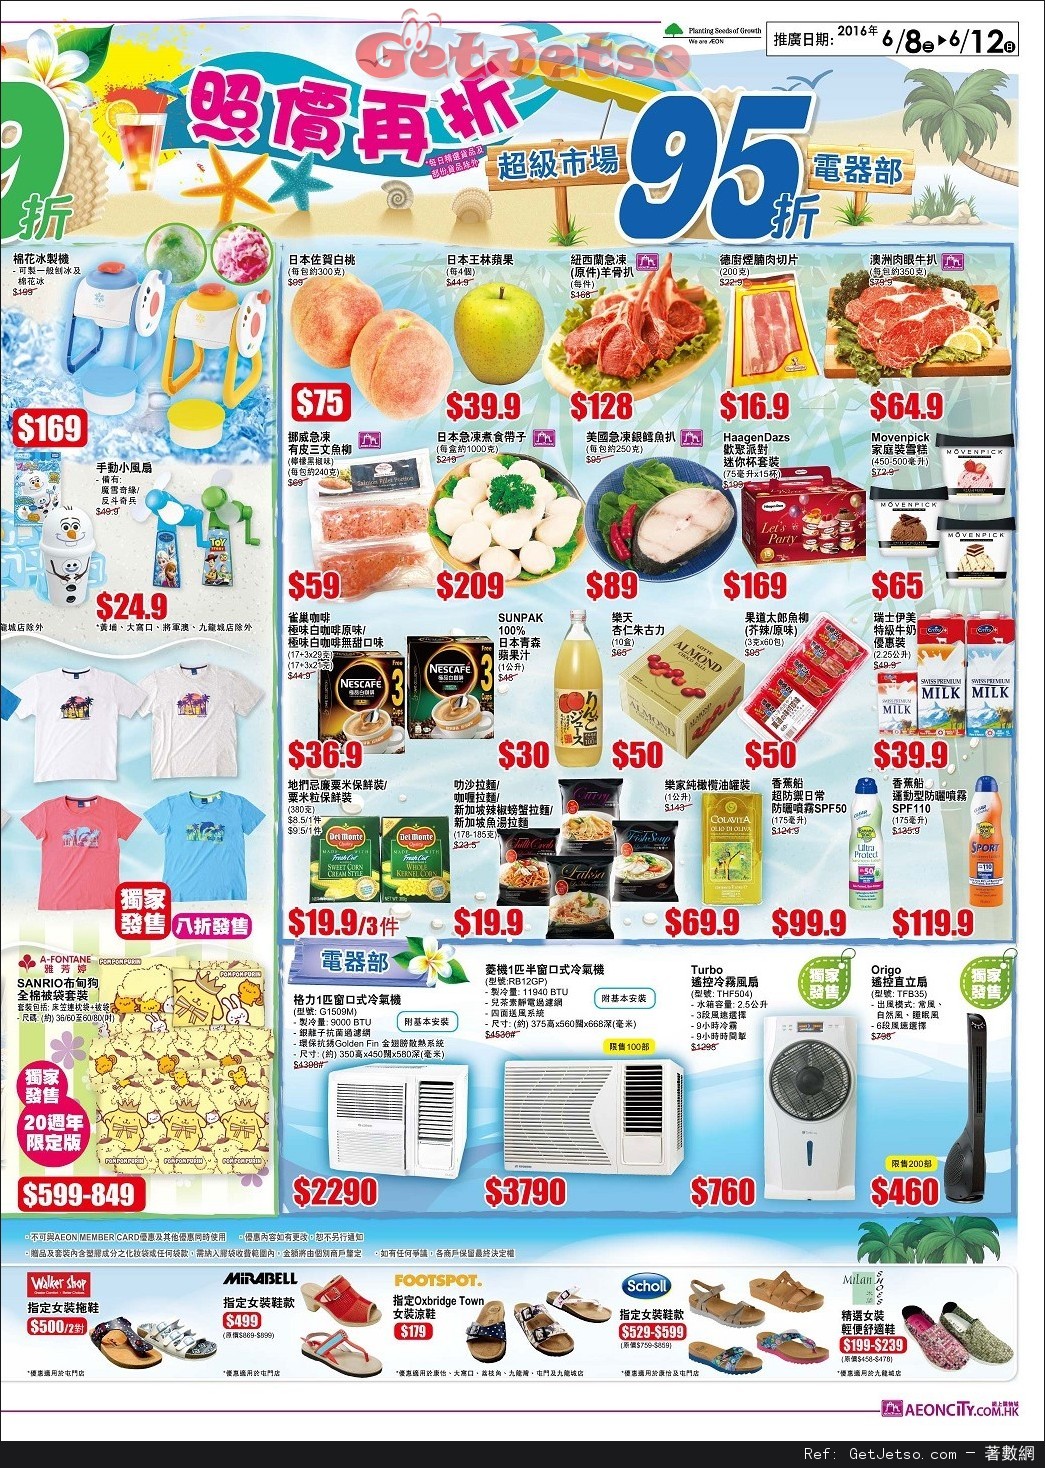 AEON 夏日大割引店內購物優惠(至16年6月12日)圖片2